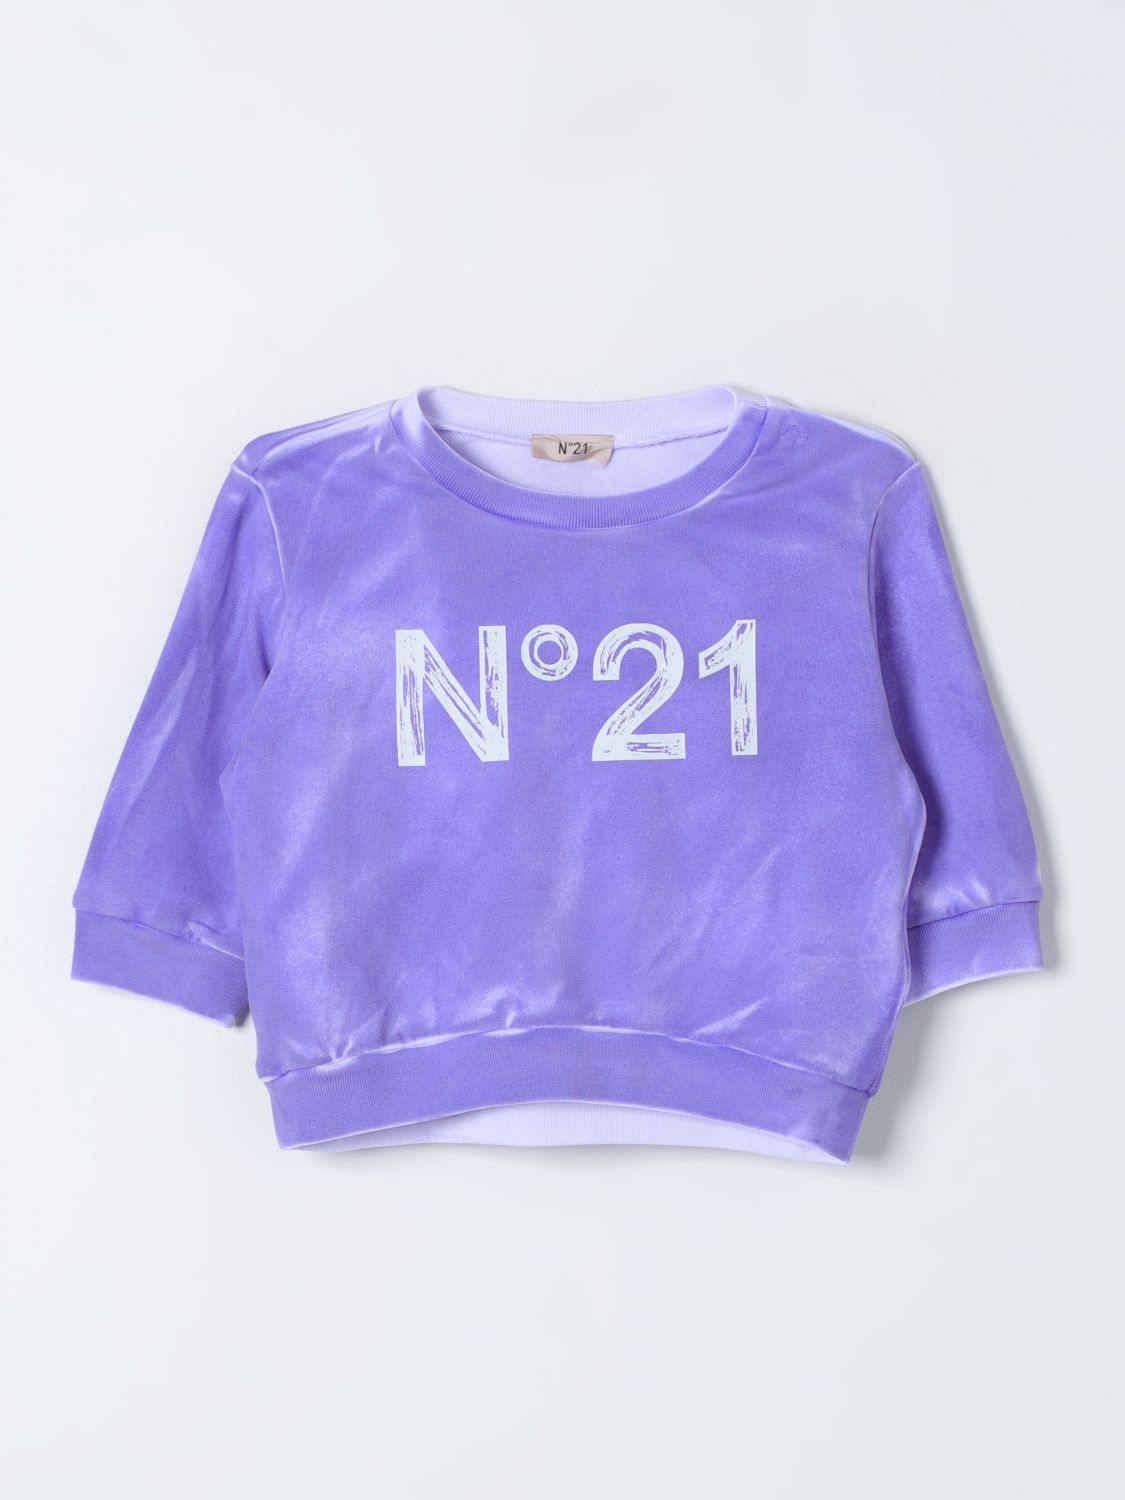 Shop N°21 Sweater N° 21 Kids Color Violet